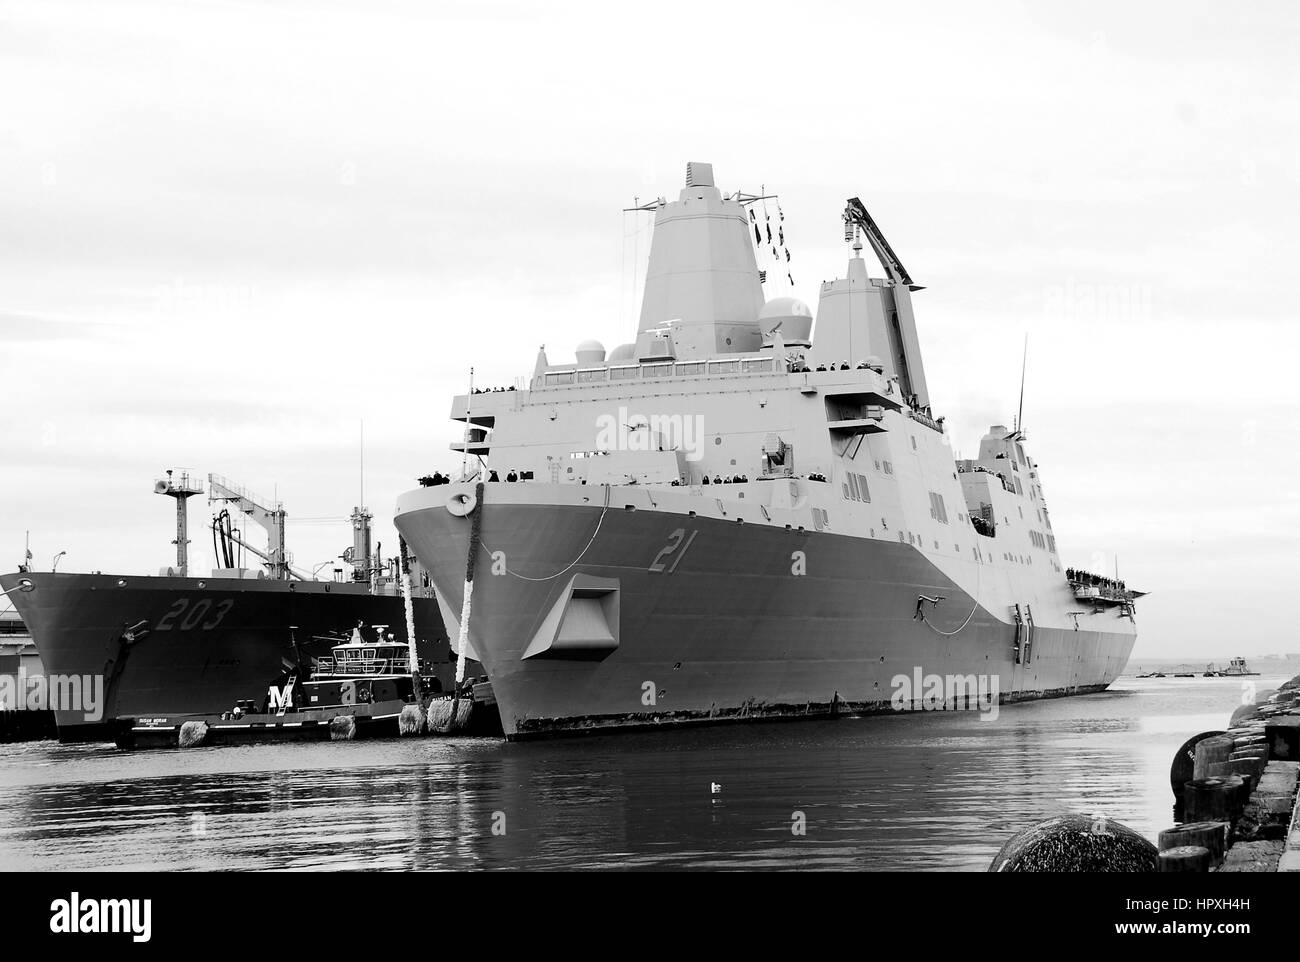 USS New York kommt am Naval Station Norfolk nach einer Bereitstellung in die Vereinigten Staaten 5. und 6. Flotte Aufgabenbereiche, Norfolk, Virginia, 20. Dezember 2012. Bild mit freundlicher Genehmigung uns Marine Communication Specialist 1.Klasse Lolita Lewis. Stockfoto